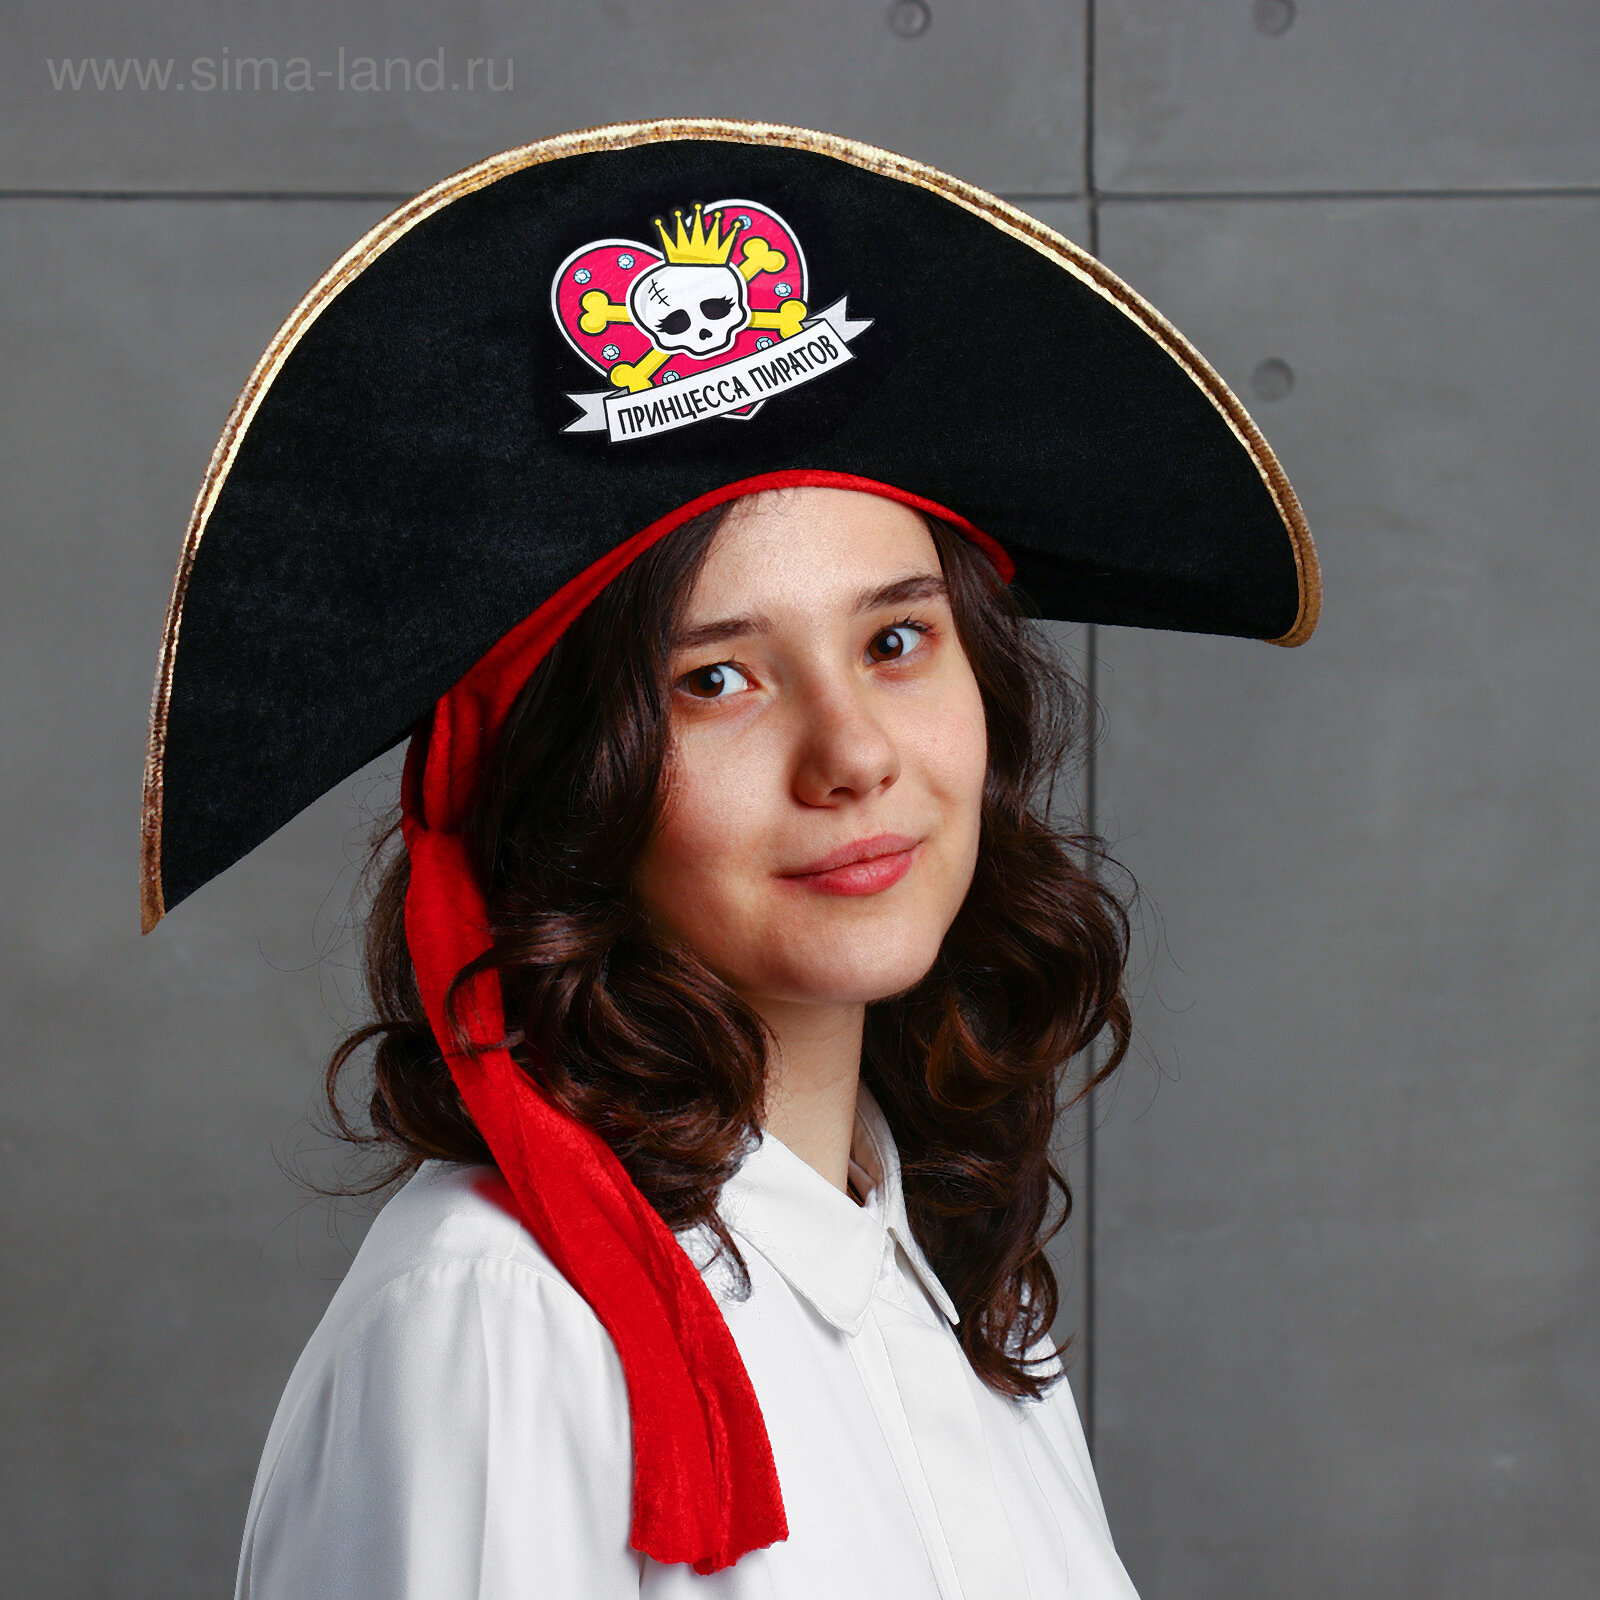 Шляпа пиратская "Принцесса пиратов" детская, фетр